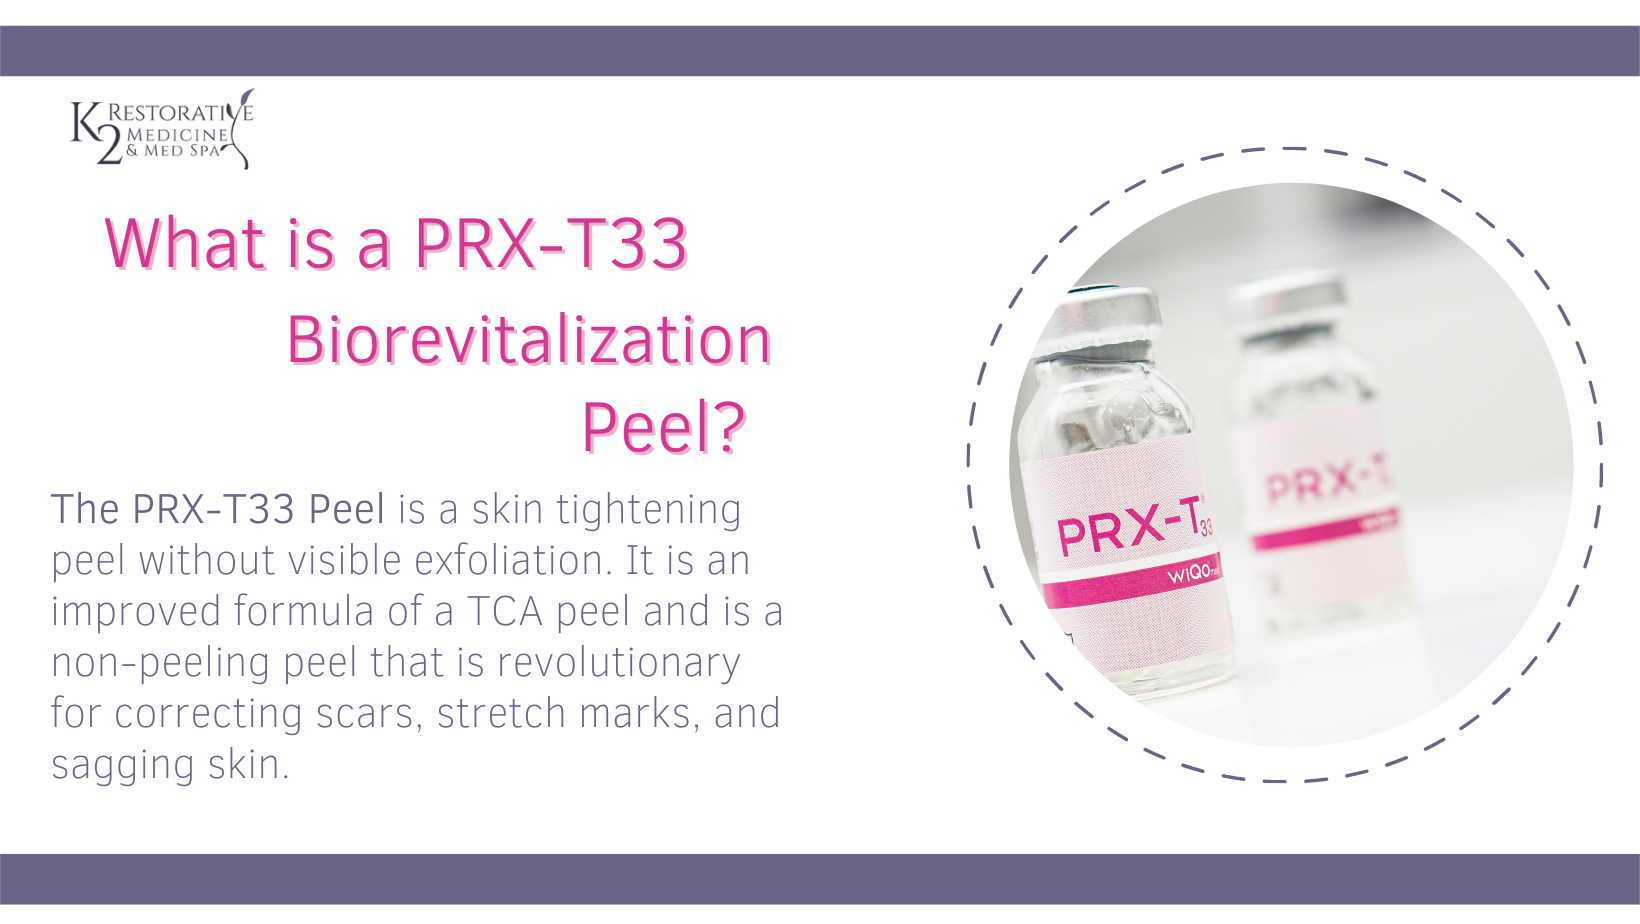 PRX-T33 Non-Peeling Peel Description